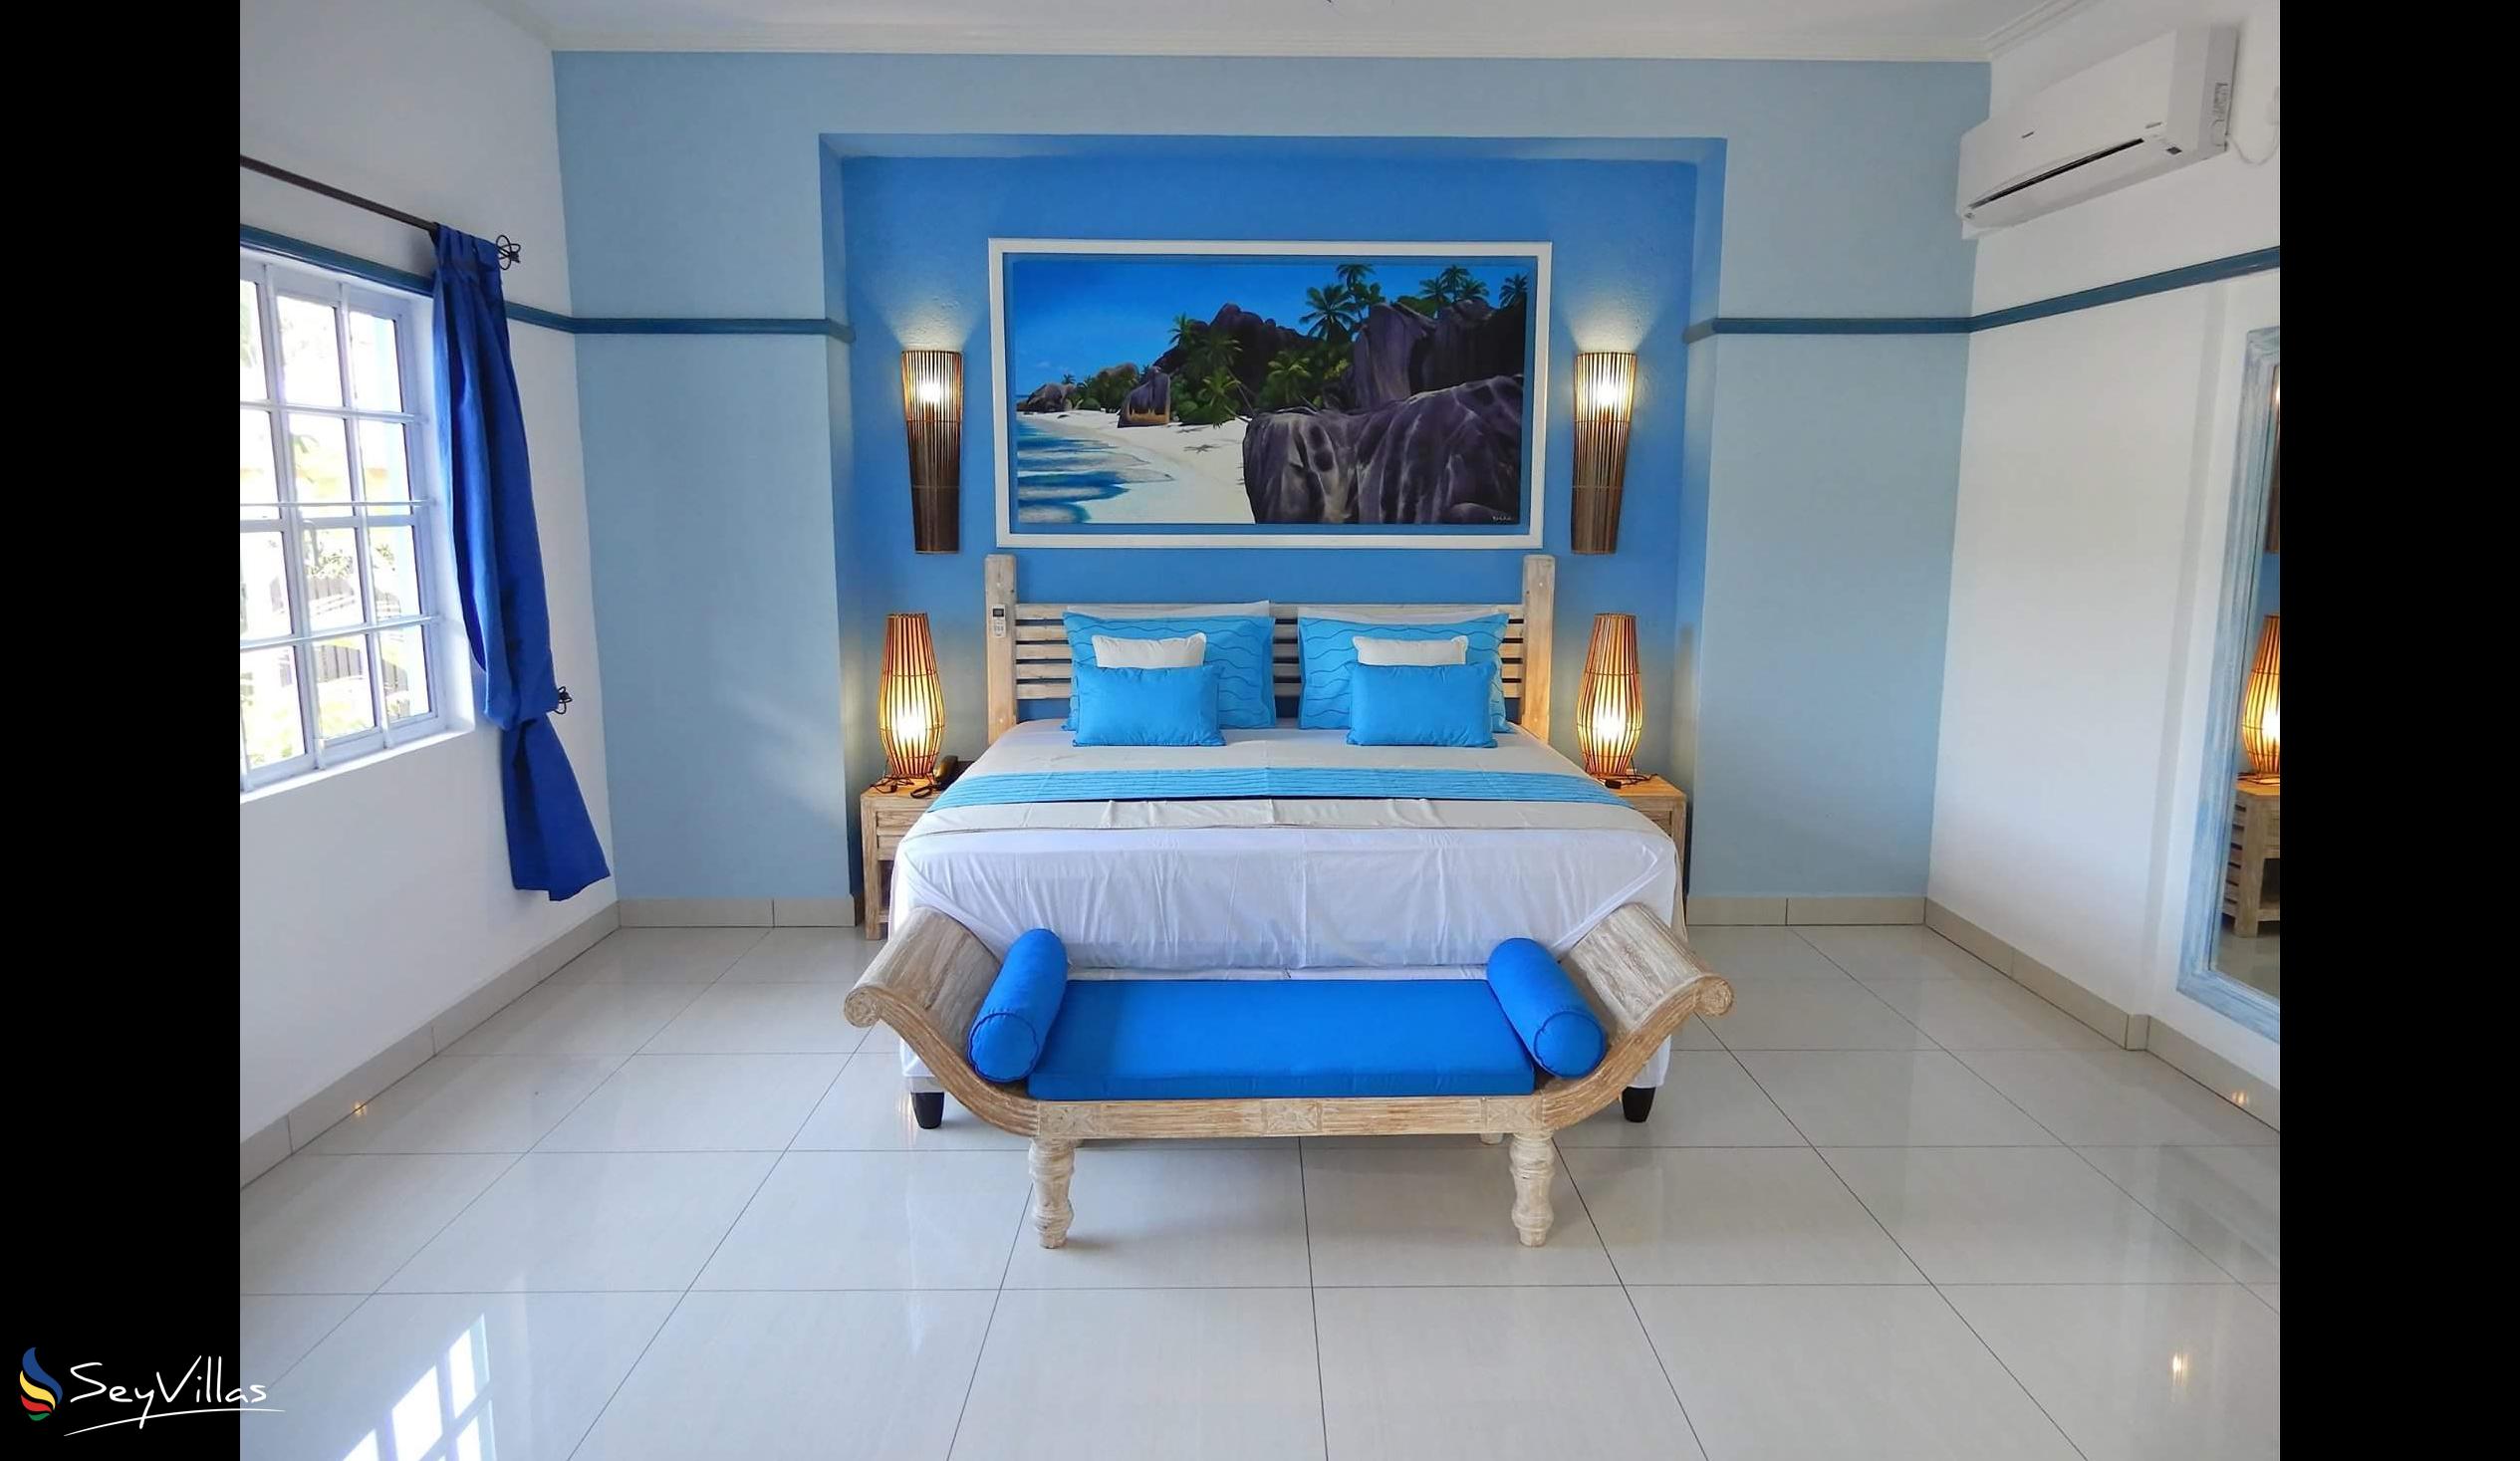 Photo 58: Villa Charme De L'ile - Deluxe Pool View Apartment - La Digue (Seychelles)